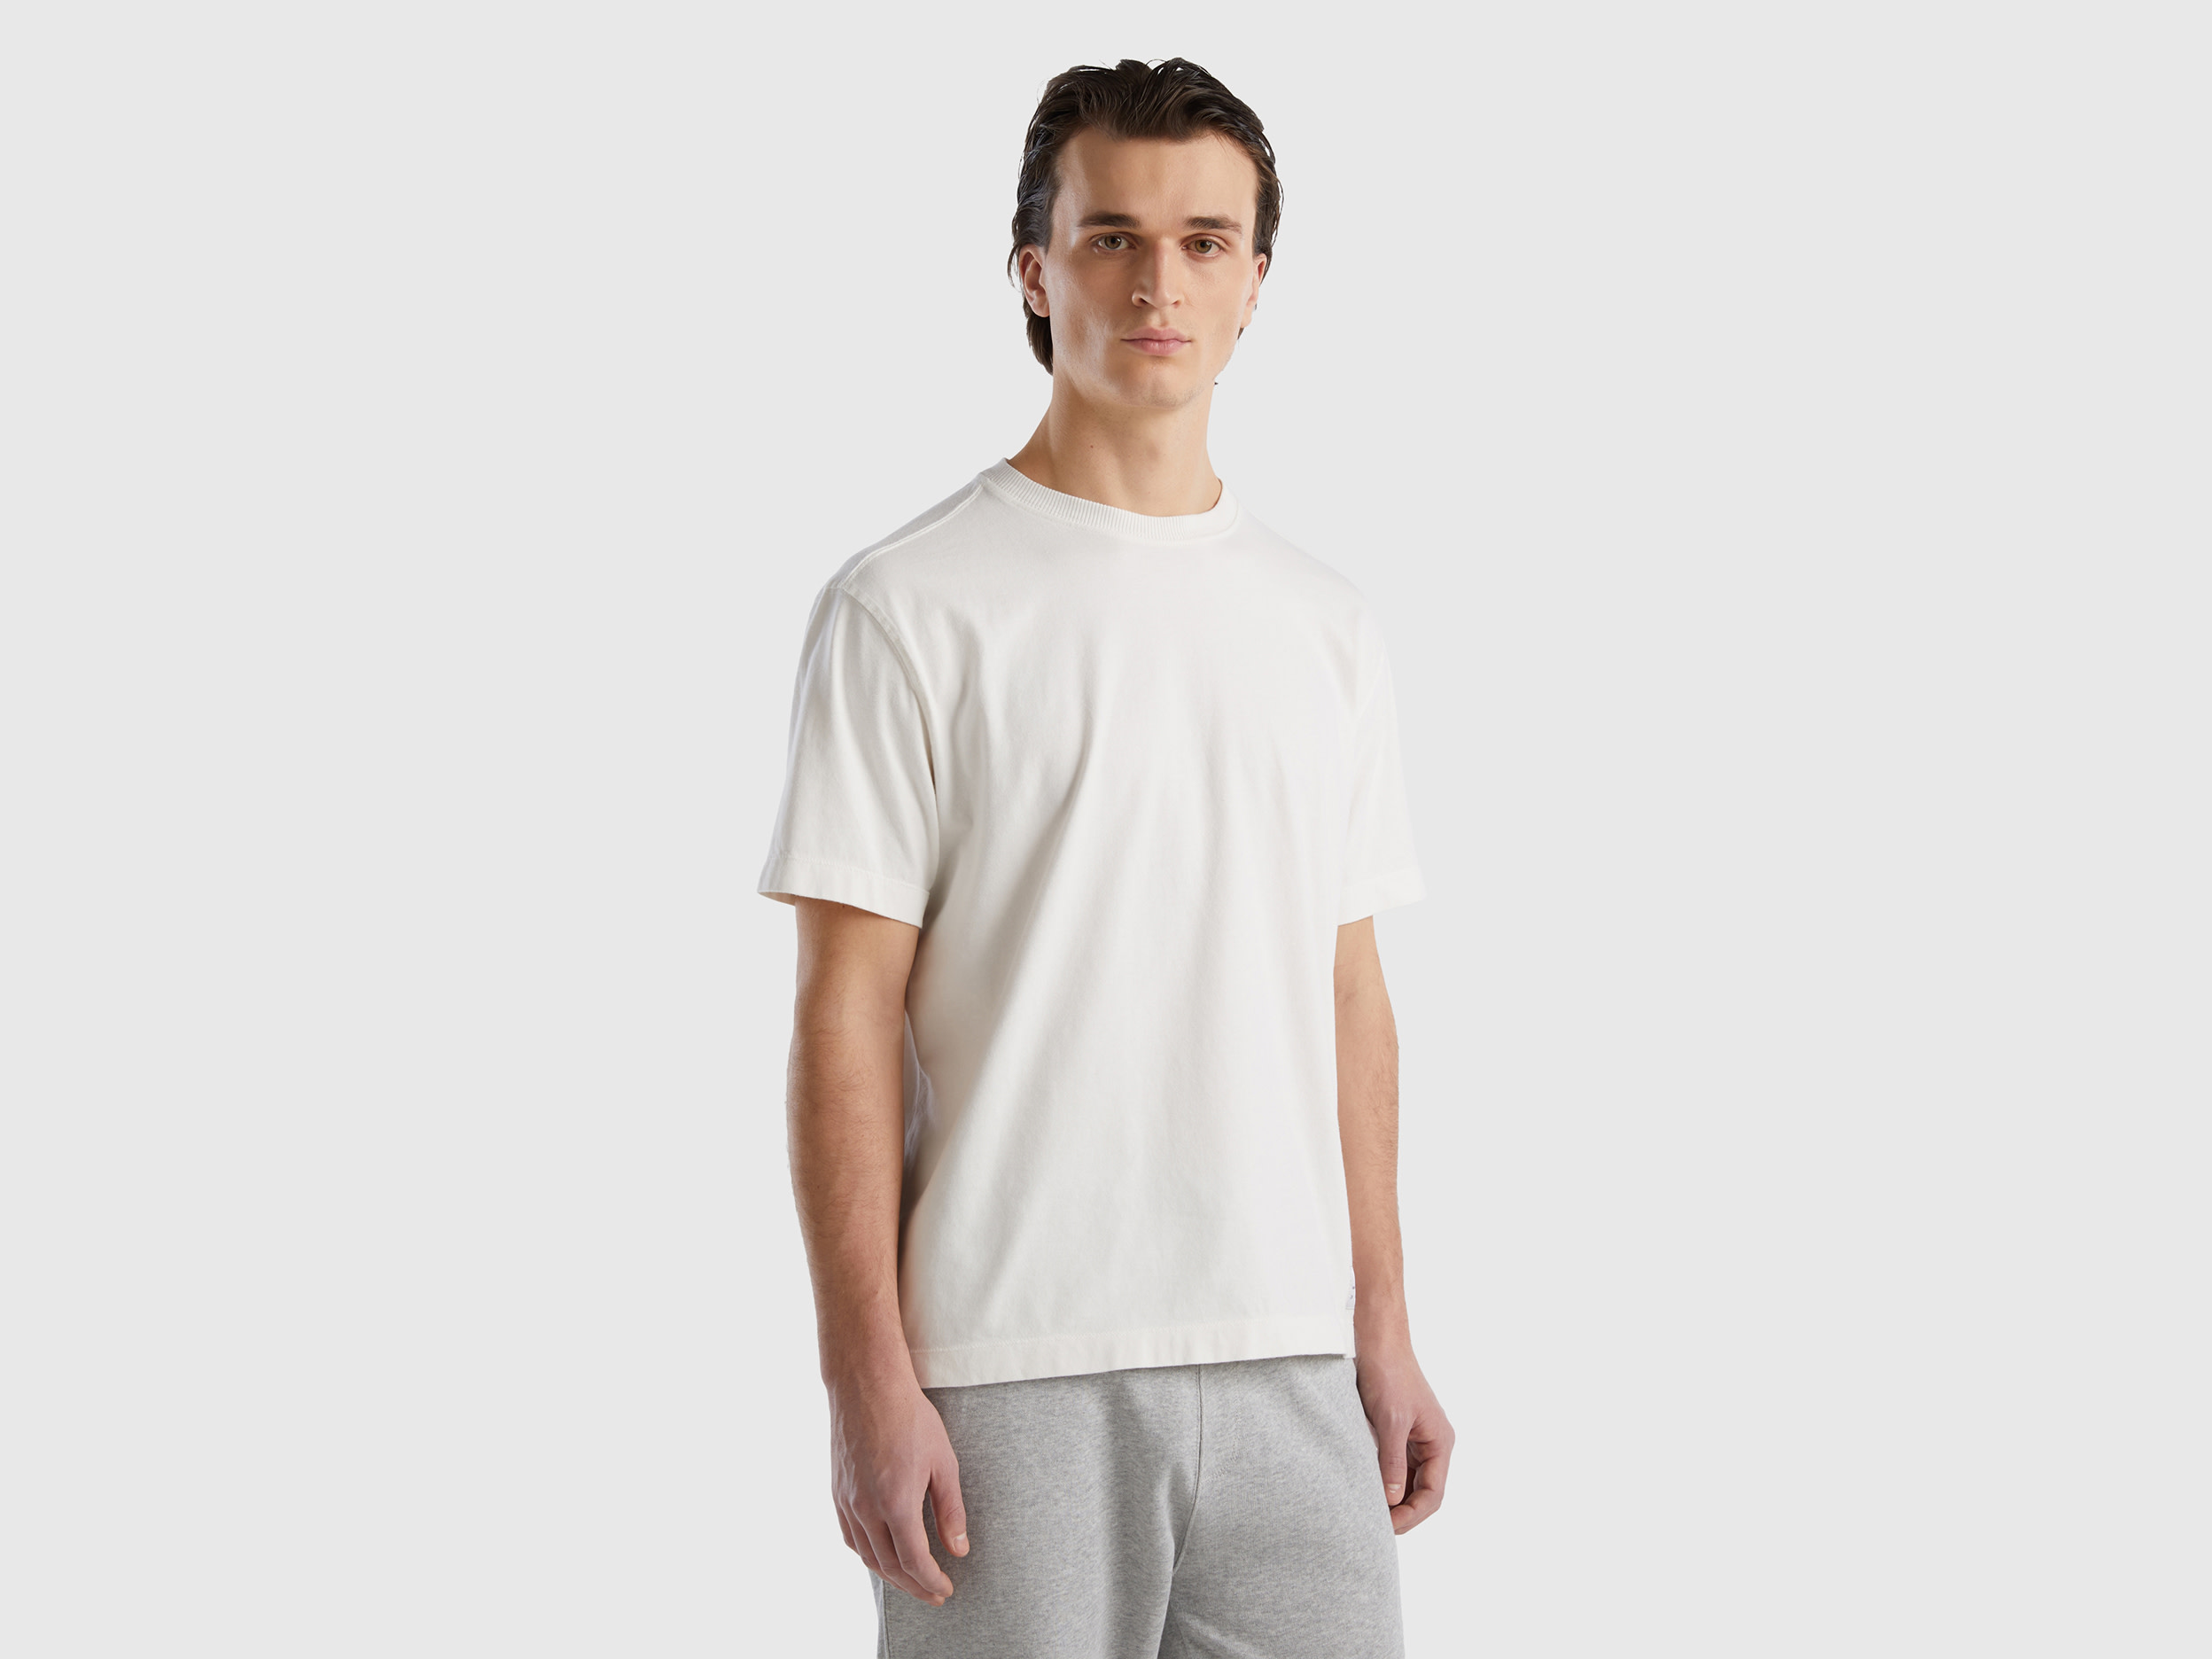 Image of Benetton, 100% Organic Cotton Crew Neck T-shirt, size XXL, Creamy White, Men